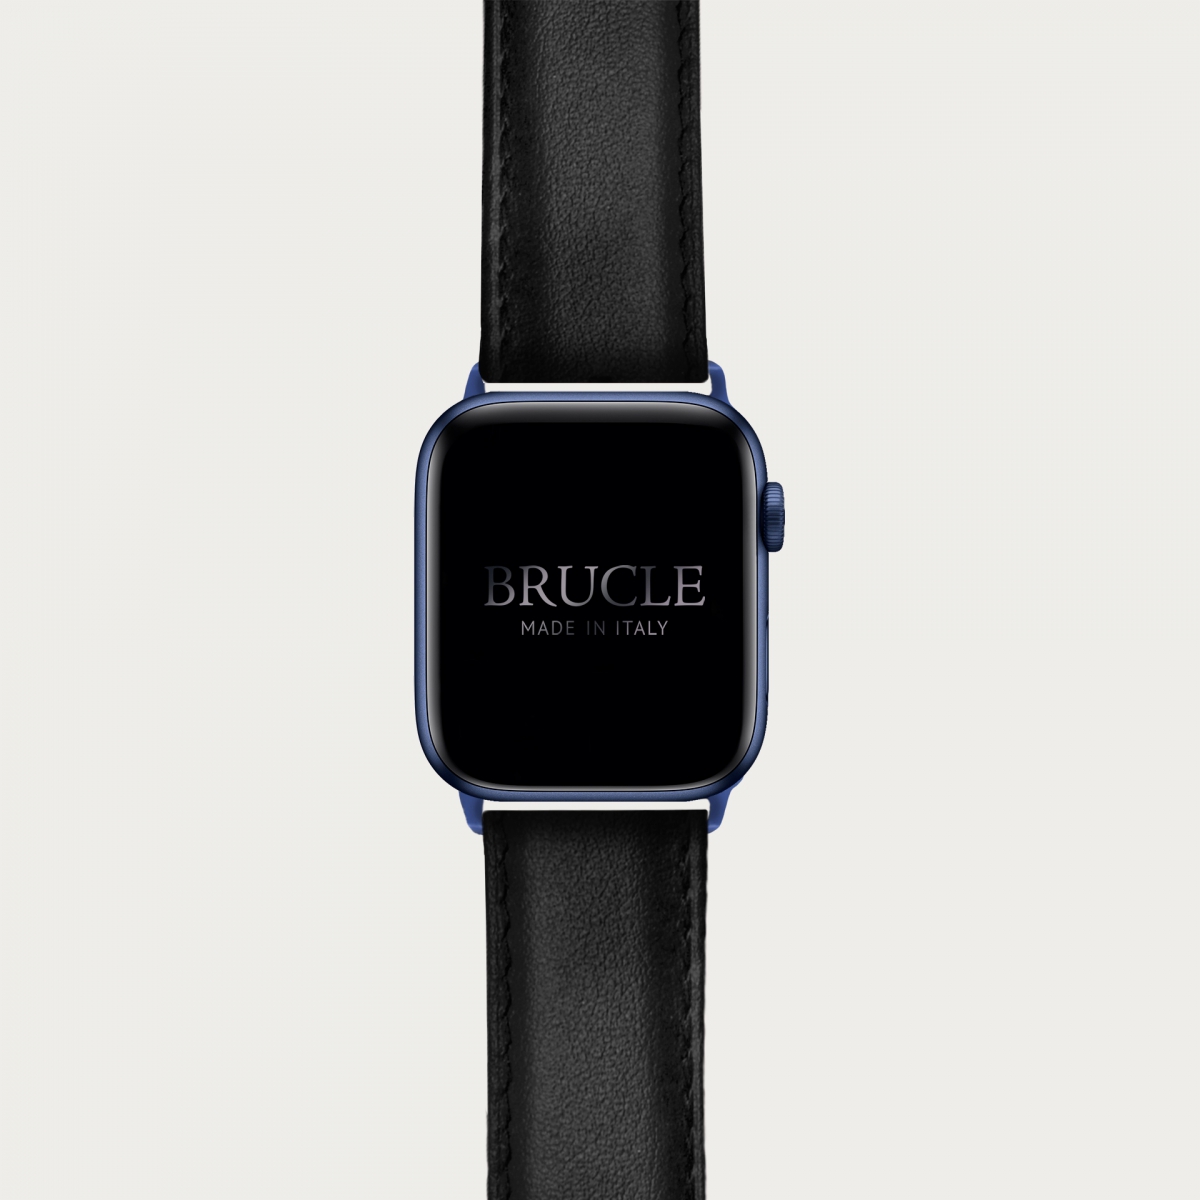 Armband kompatibel mit Apple Watch / Samsung Smartwatch, schwarz